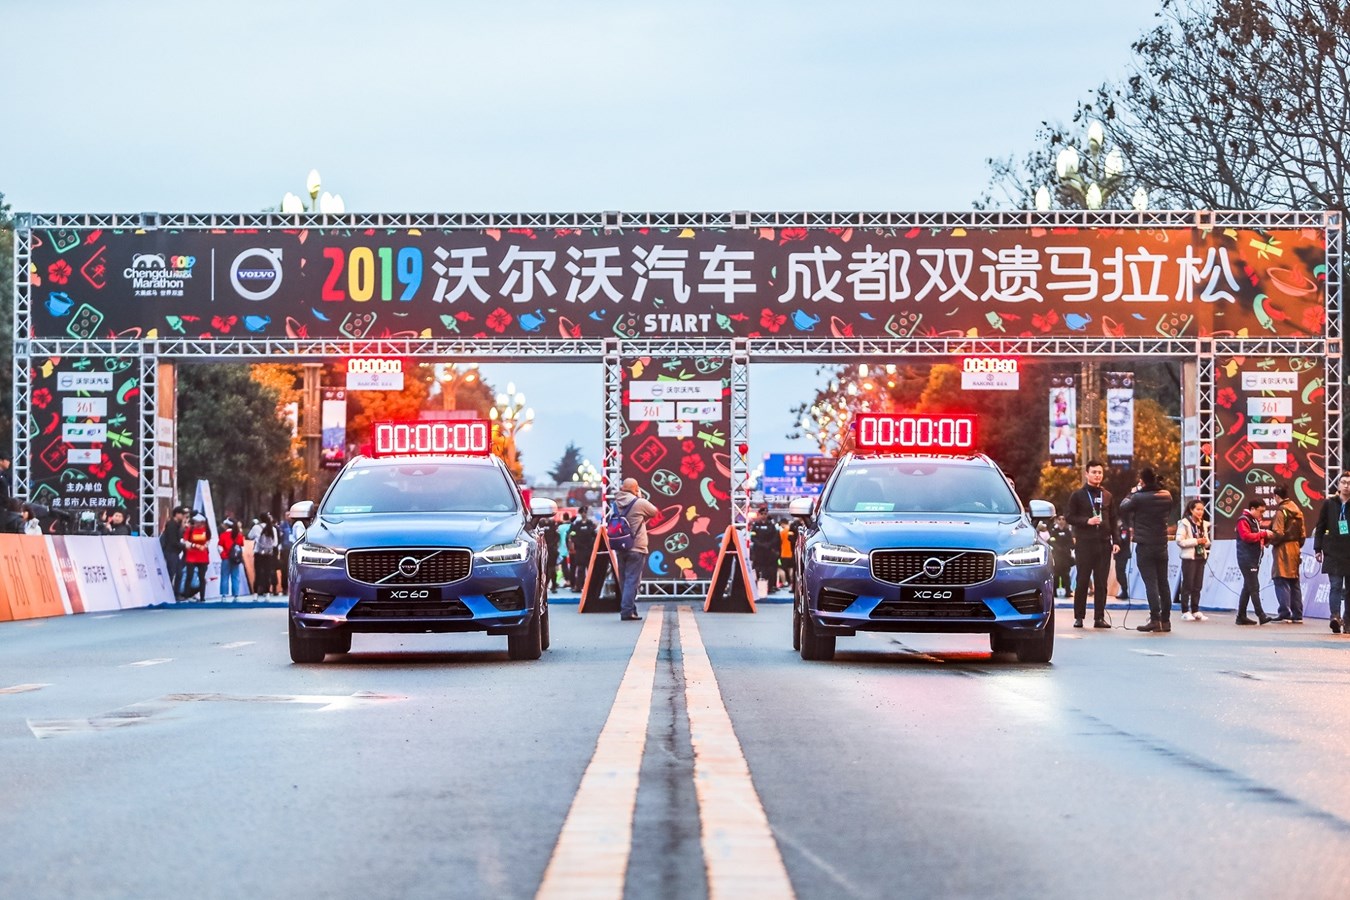 人文科技豪华SUV沃尔沃XC60官方领跑2019沃尔沃汽车成都双遗马拉松